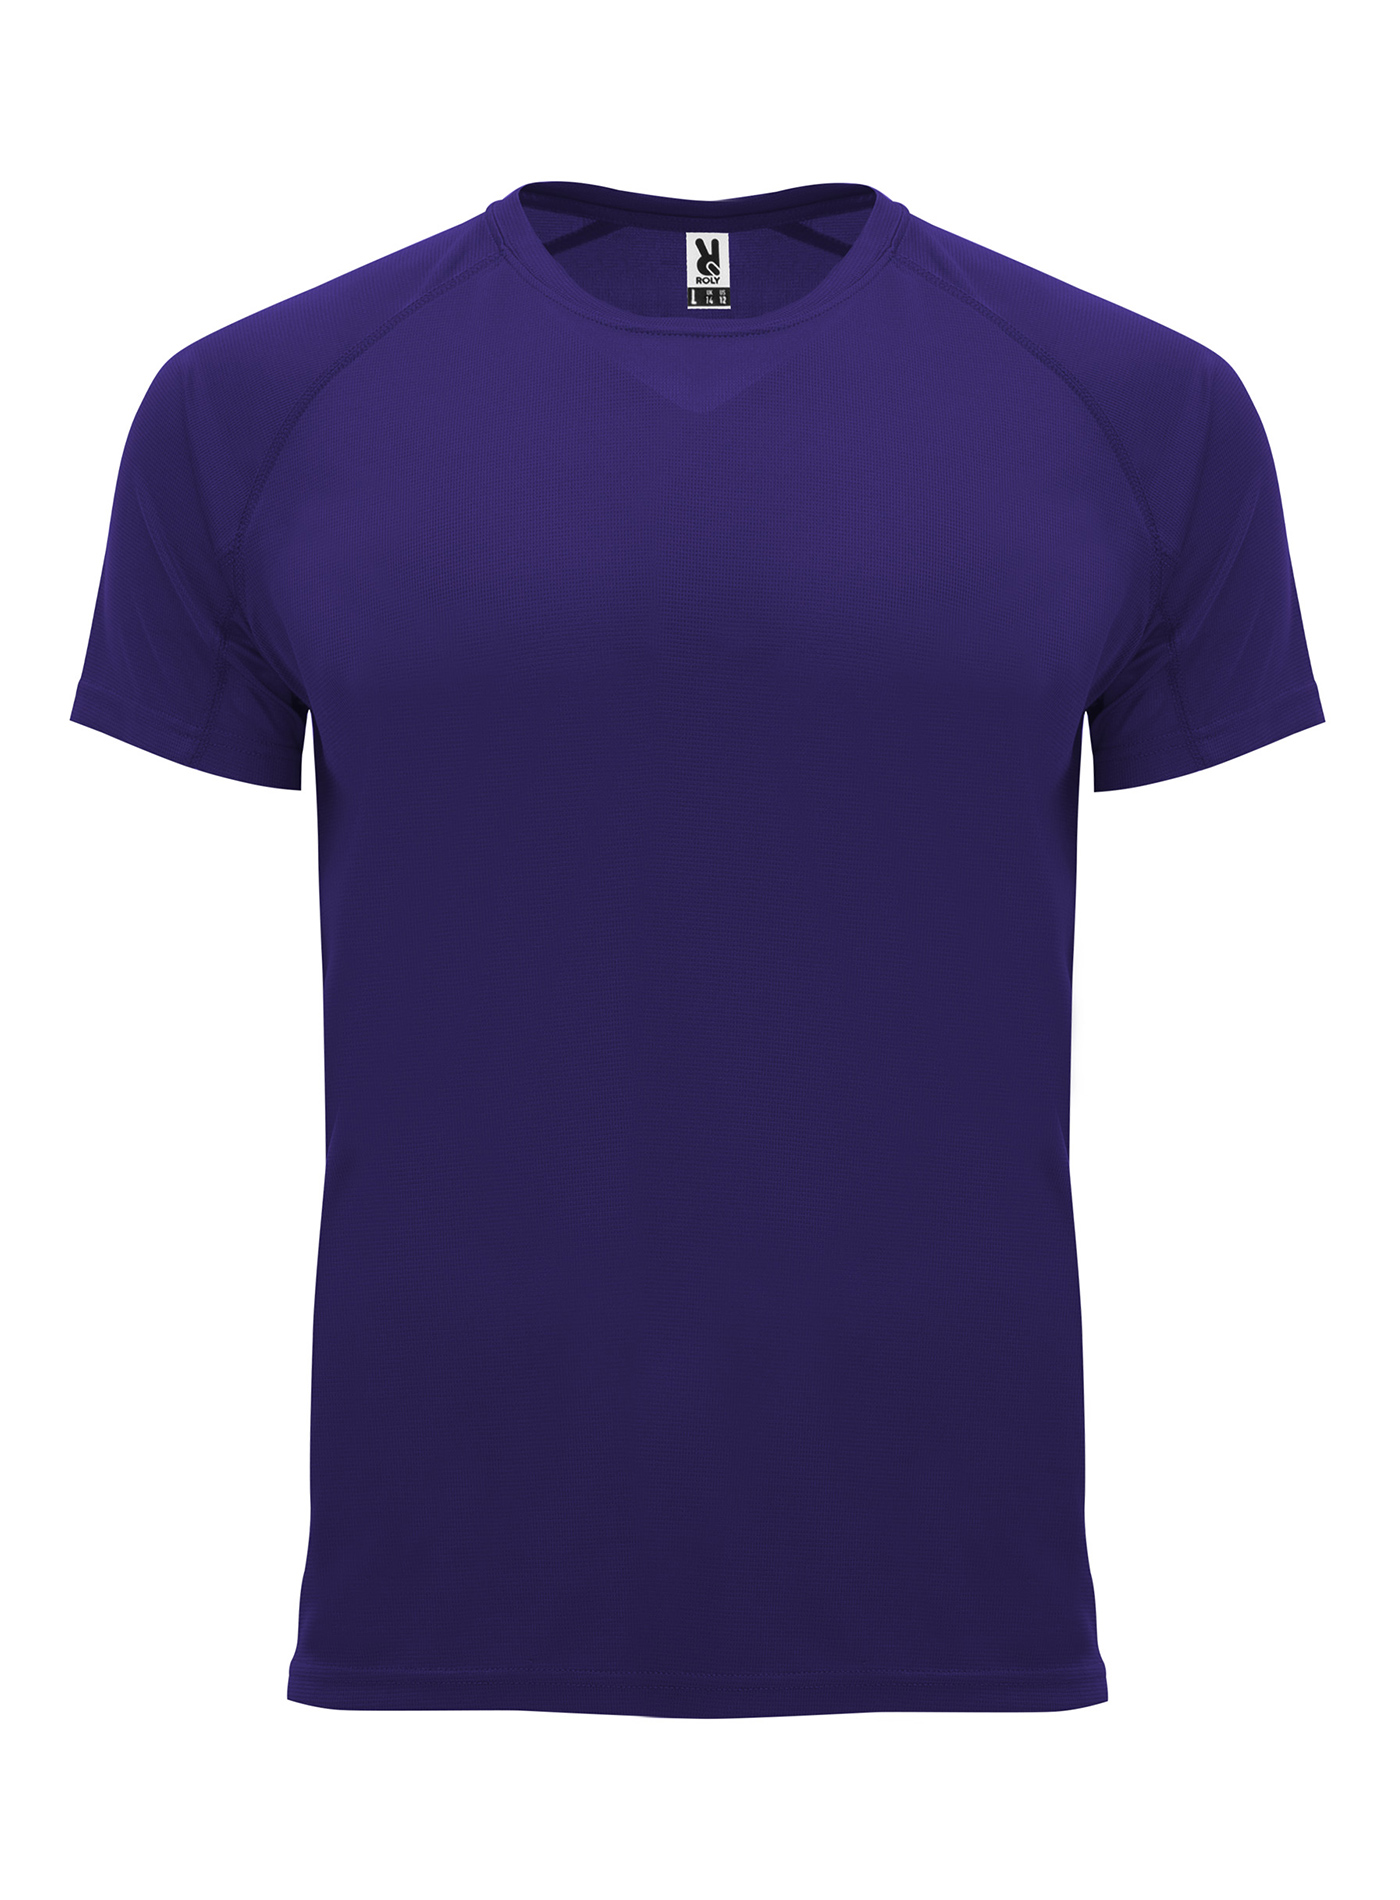 Pánské sportovní tričko Roly Bahrain - Tmavě fialová M